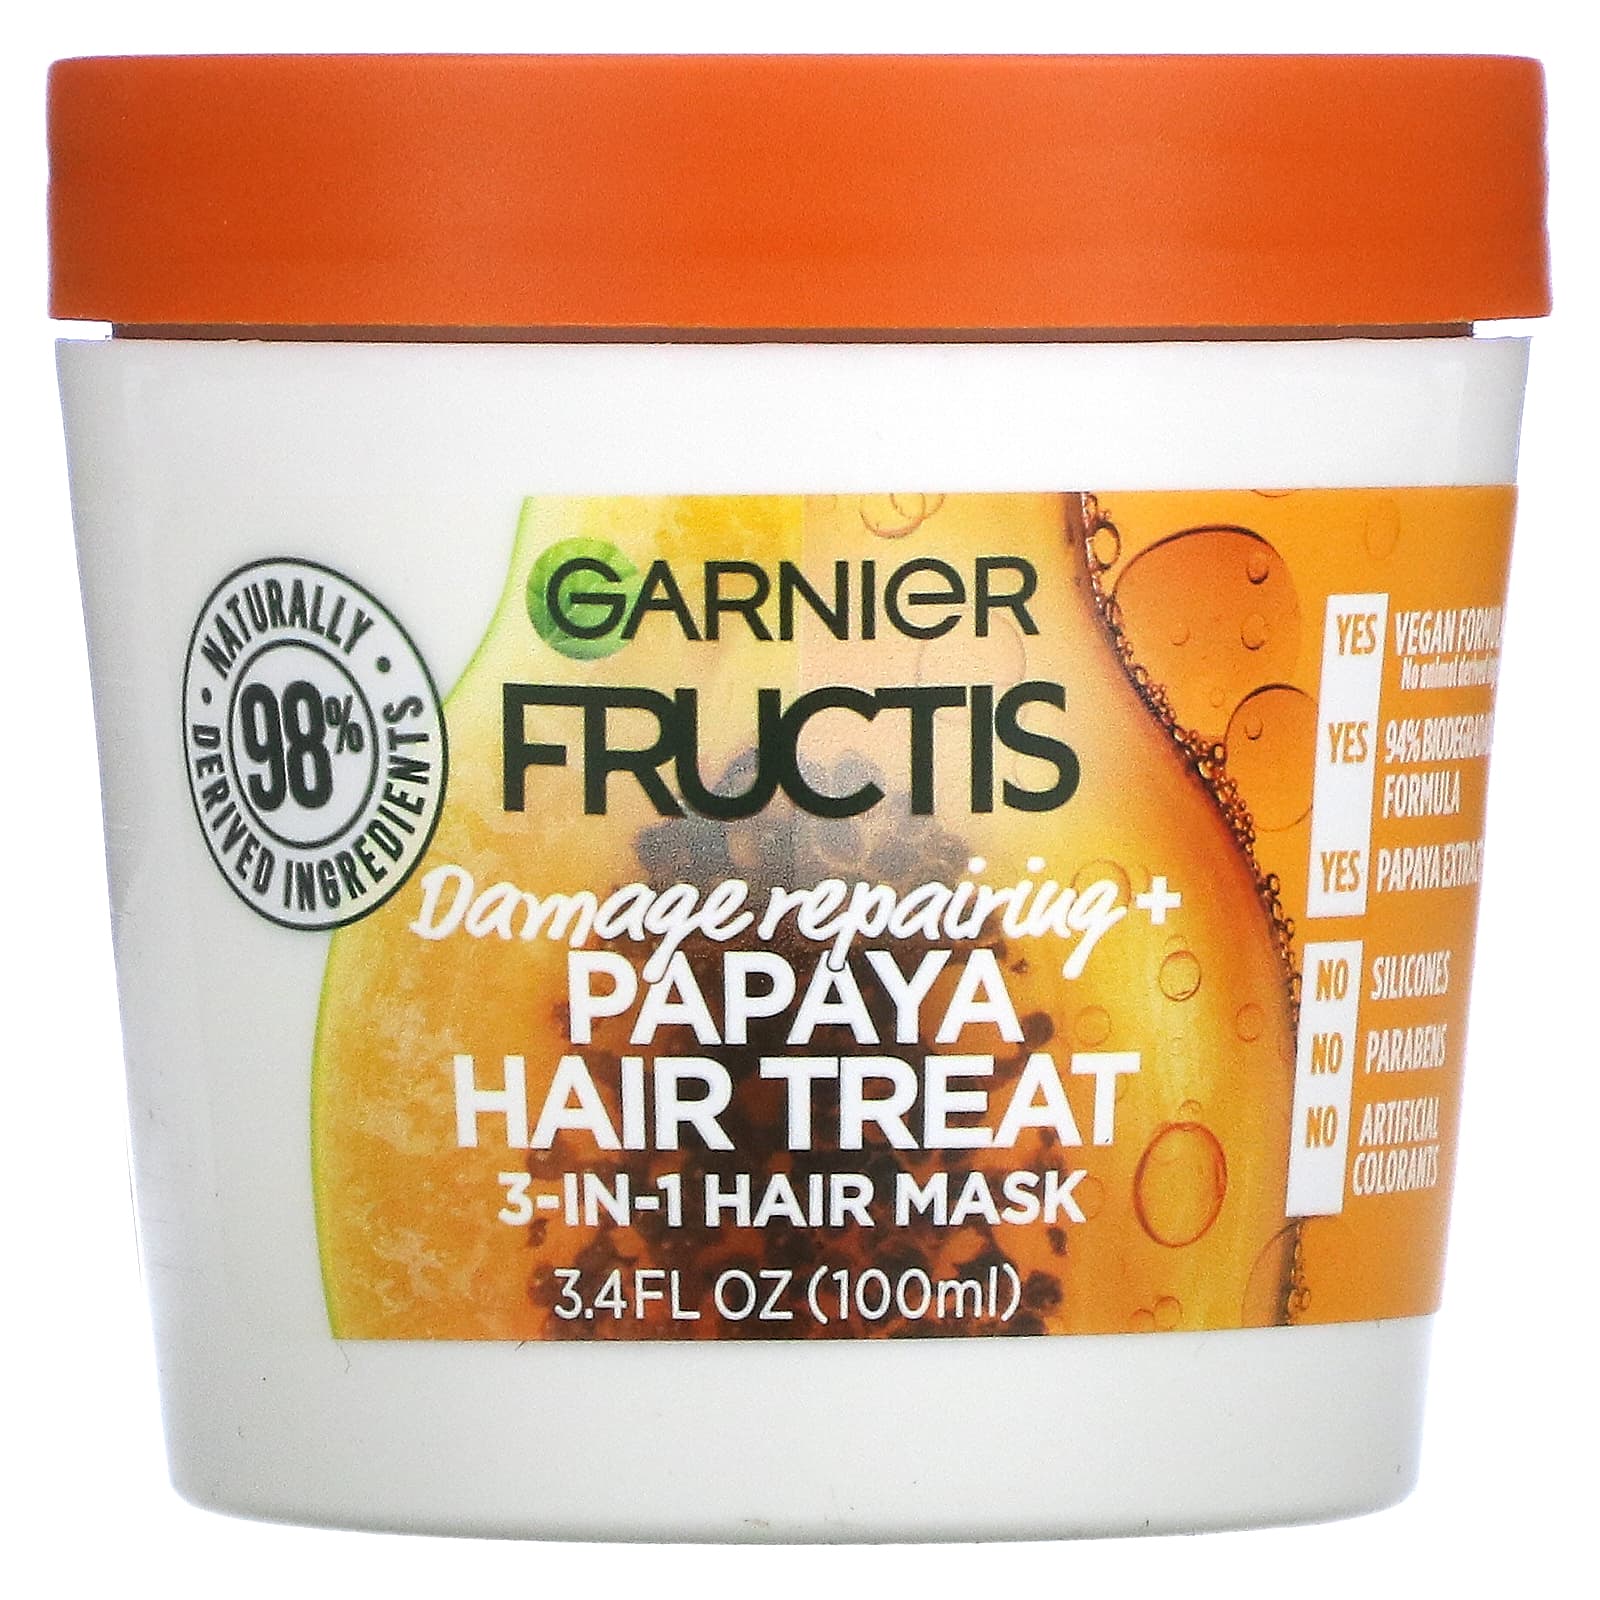 Garnier, Fructis, Damage Repairing+, Papaya Hair Treat, 3-In-1 Hair Mask,   fl oz (100